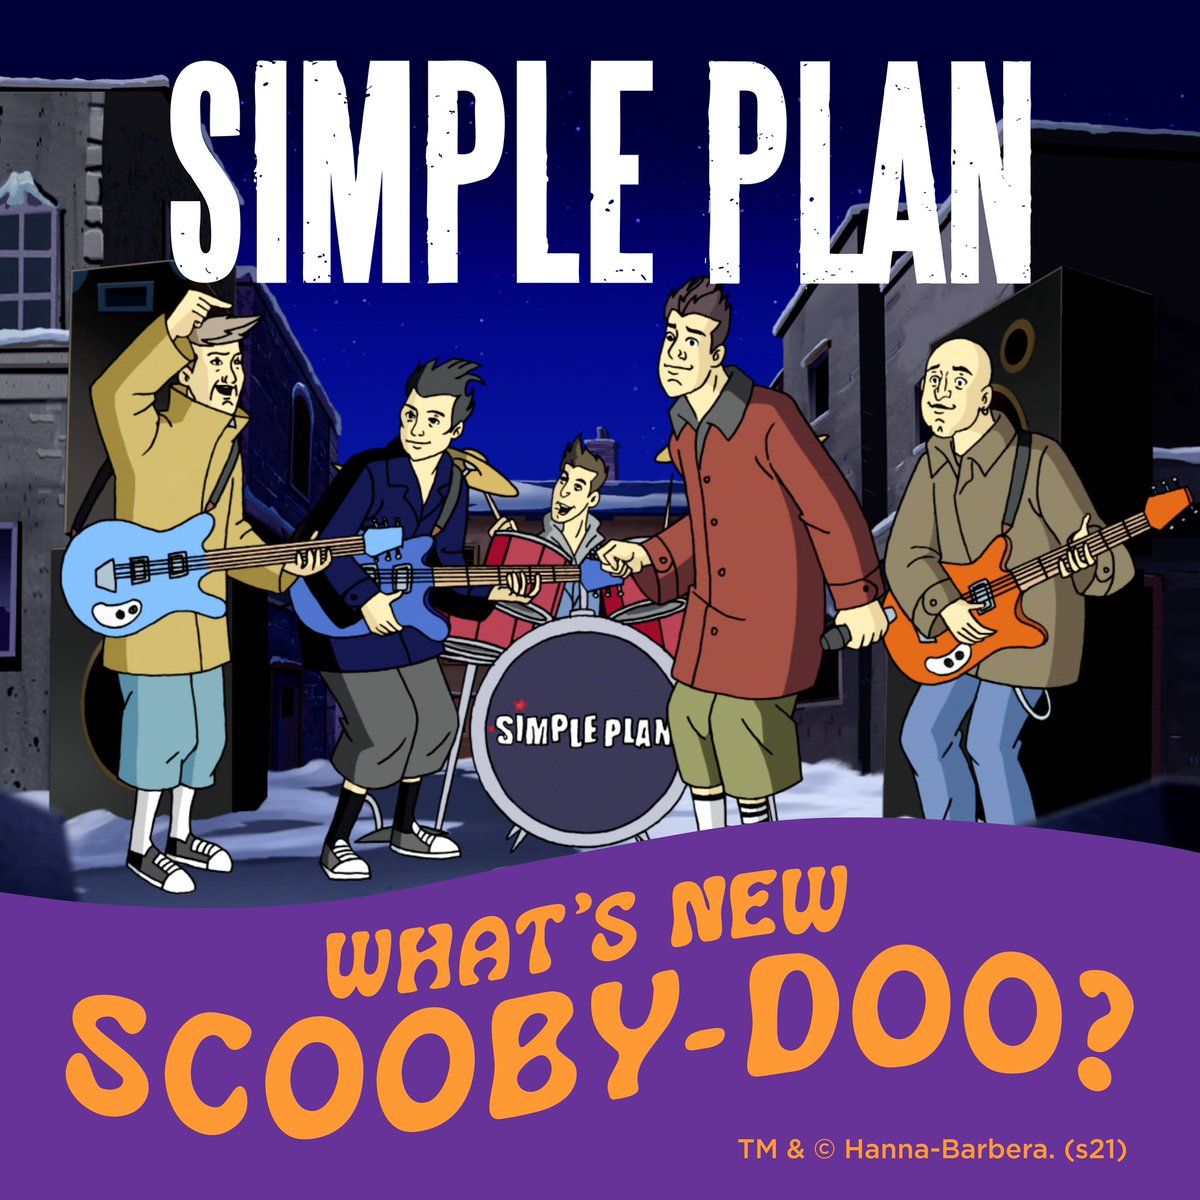 Imagem do álbum What's New Scooby-Doo? do(a) artista Simple Plan